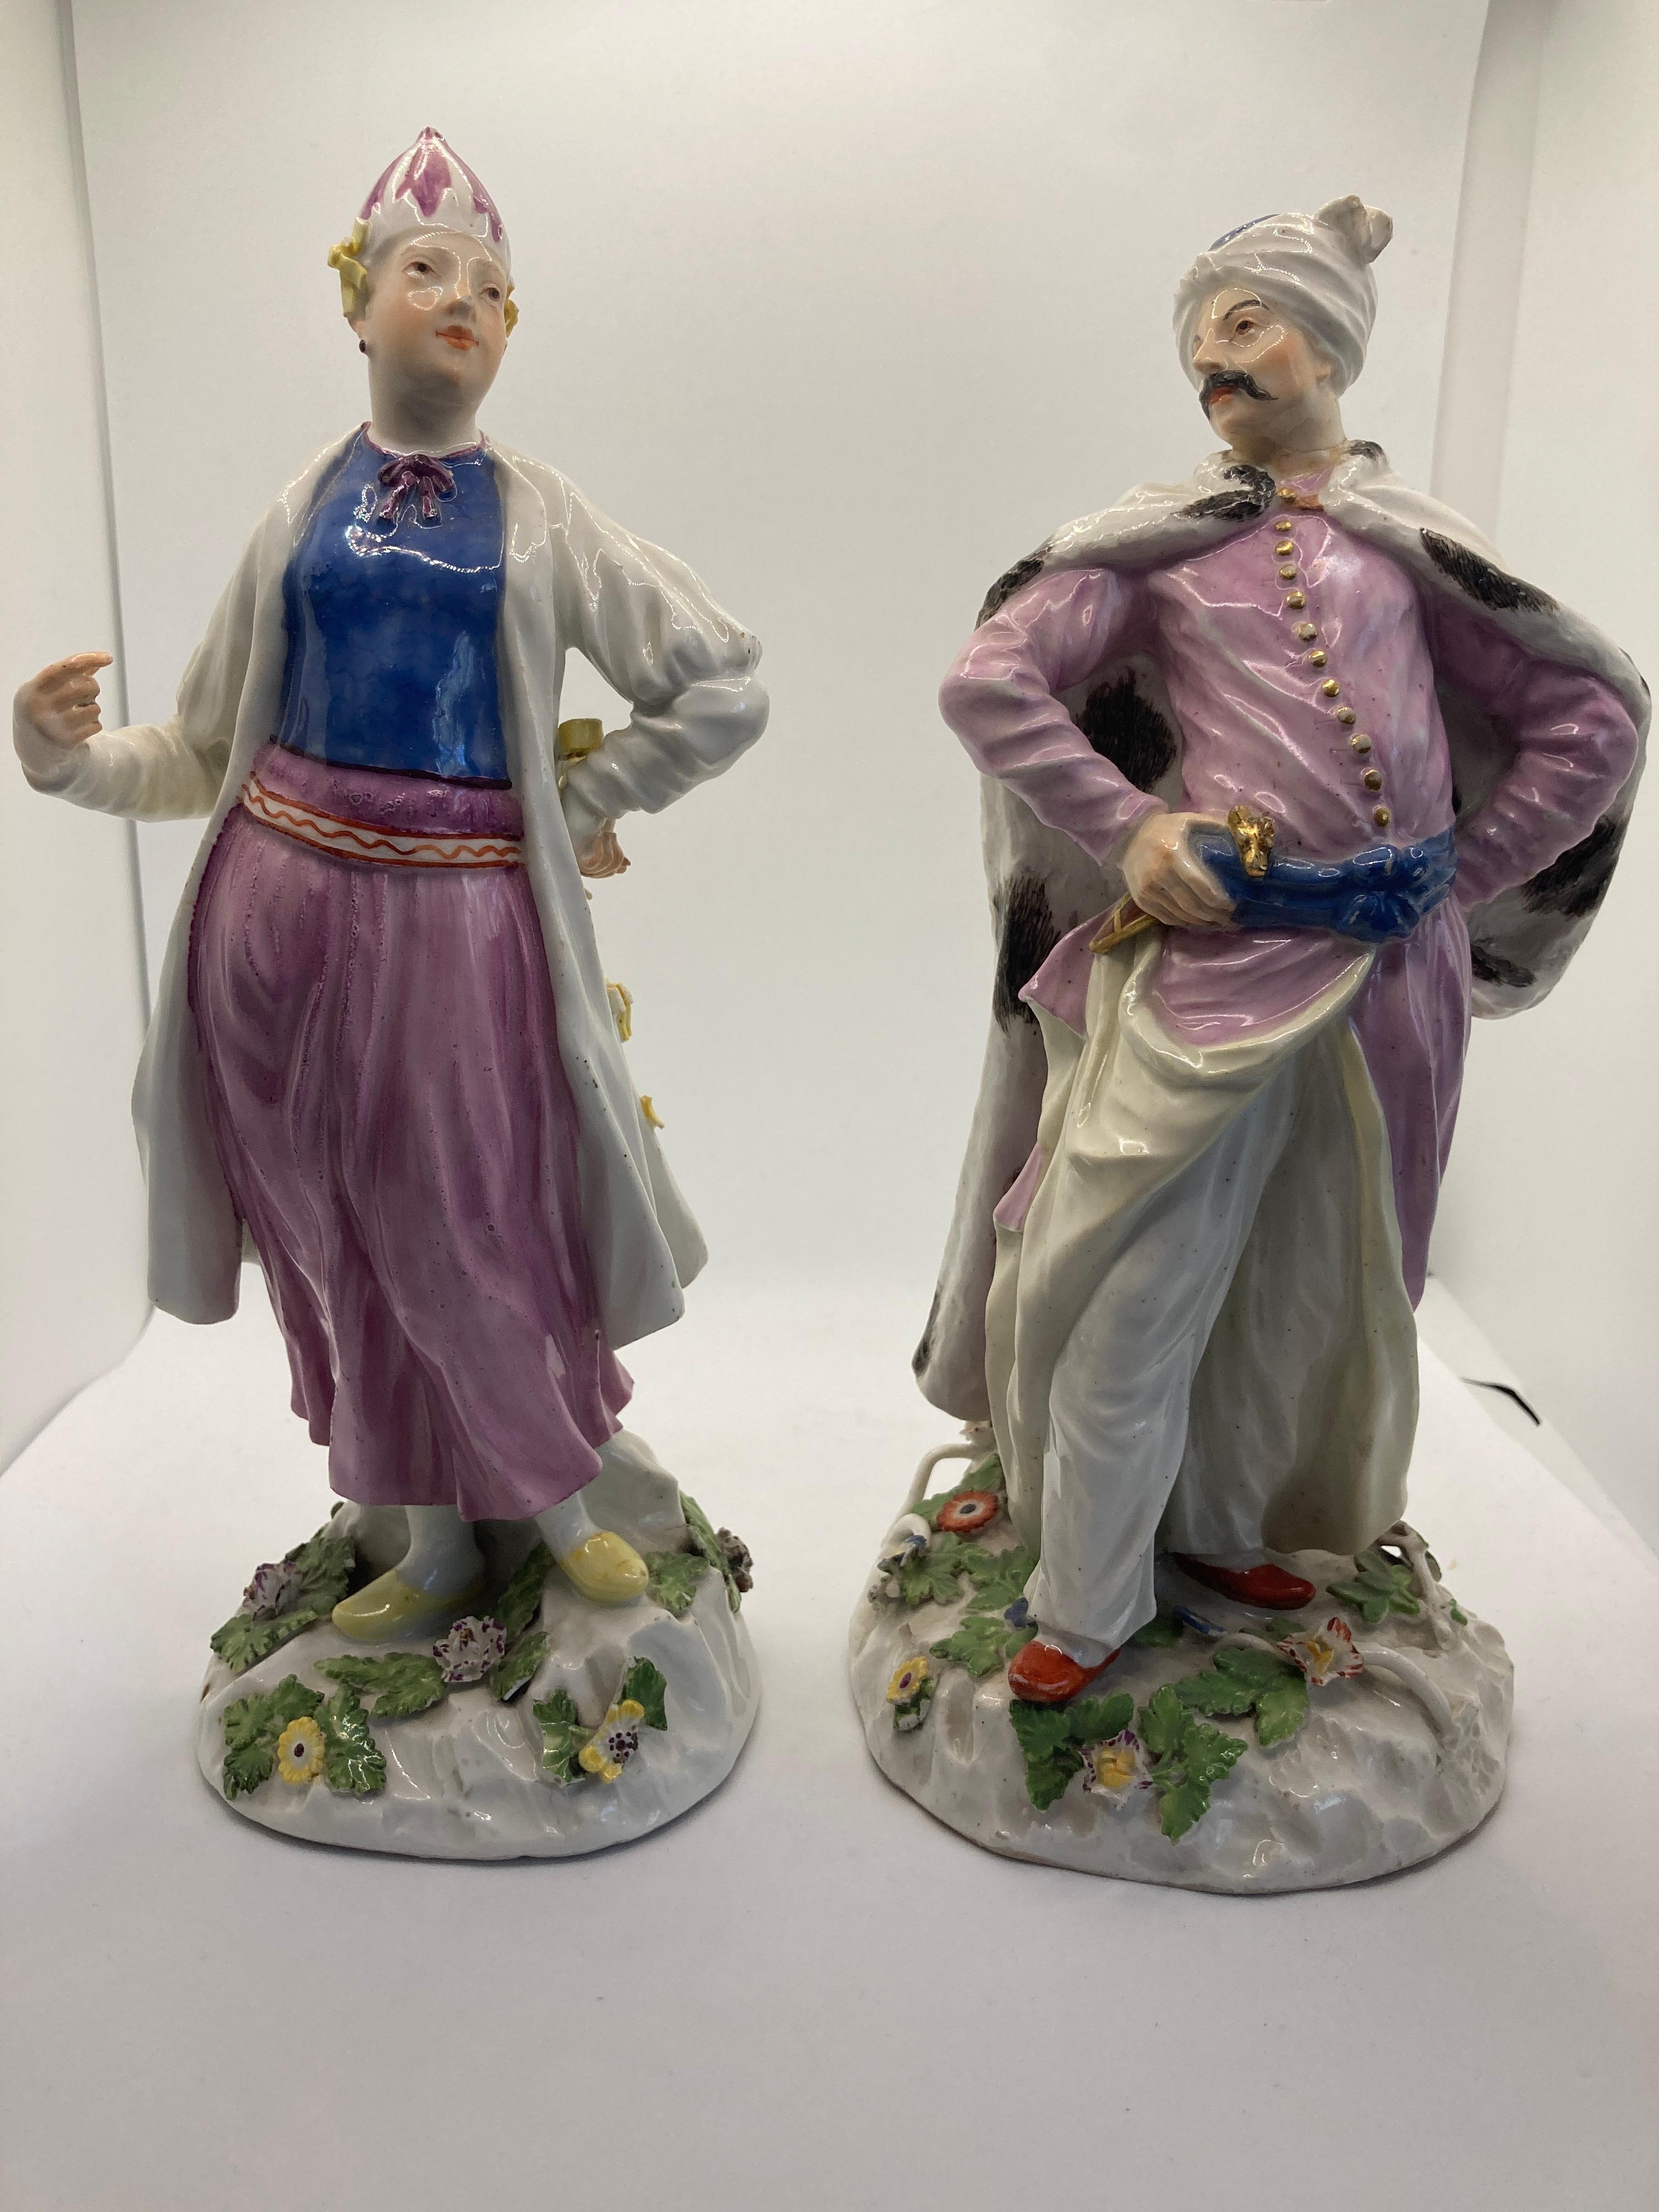 Meissener Porzellanfiguren des 18. Jahrhunderts, türkische / persische Dame und Herr. um 1755 

Beide Entwürfe stammen von Johann Joachim Kaendler. Seltene und frühe Exemplare der beiden Modelle.

